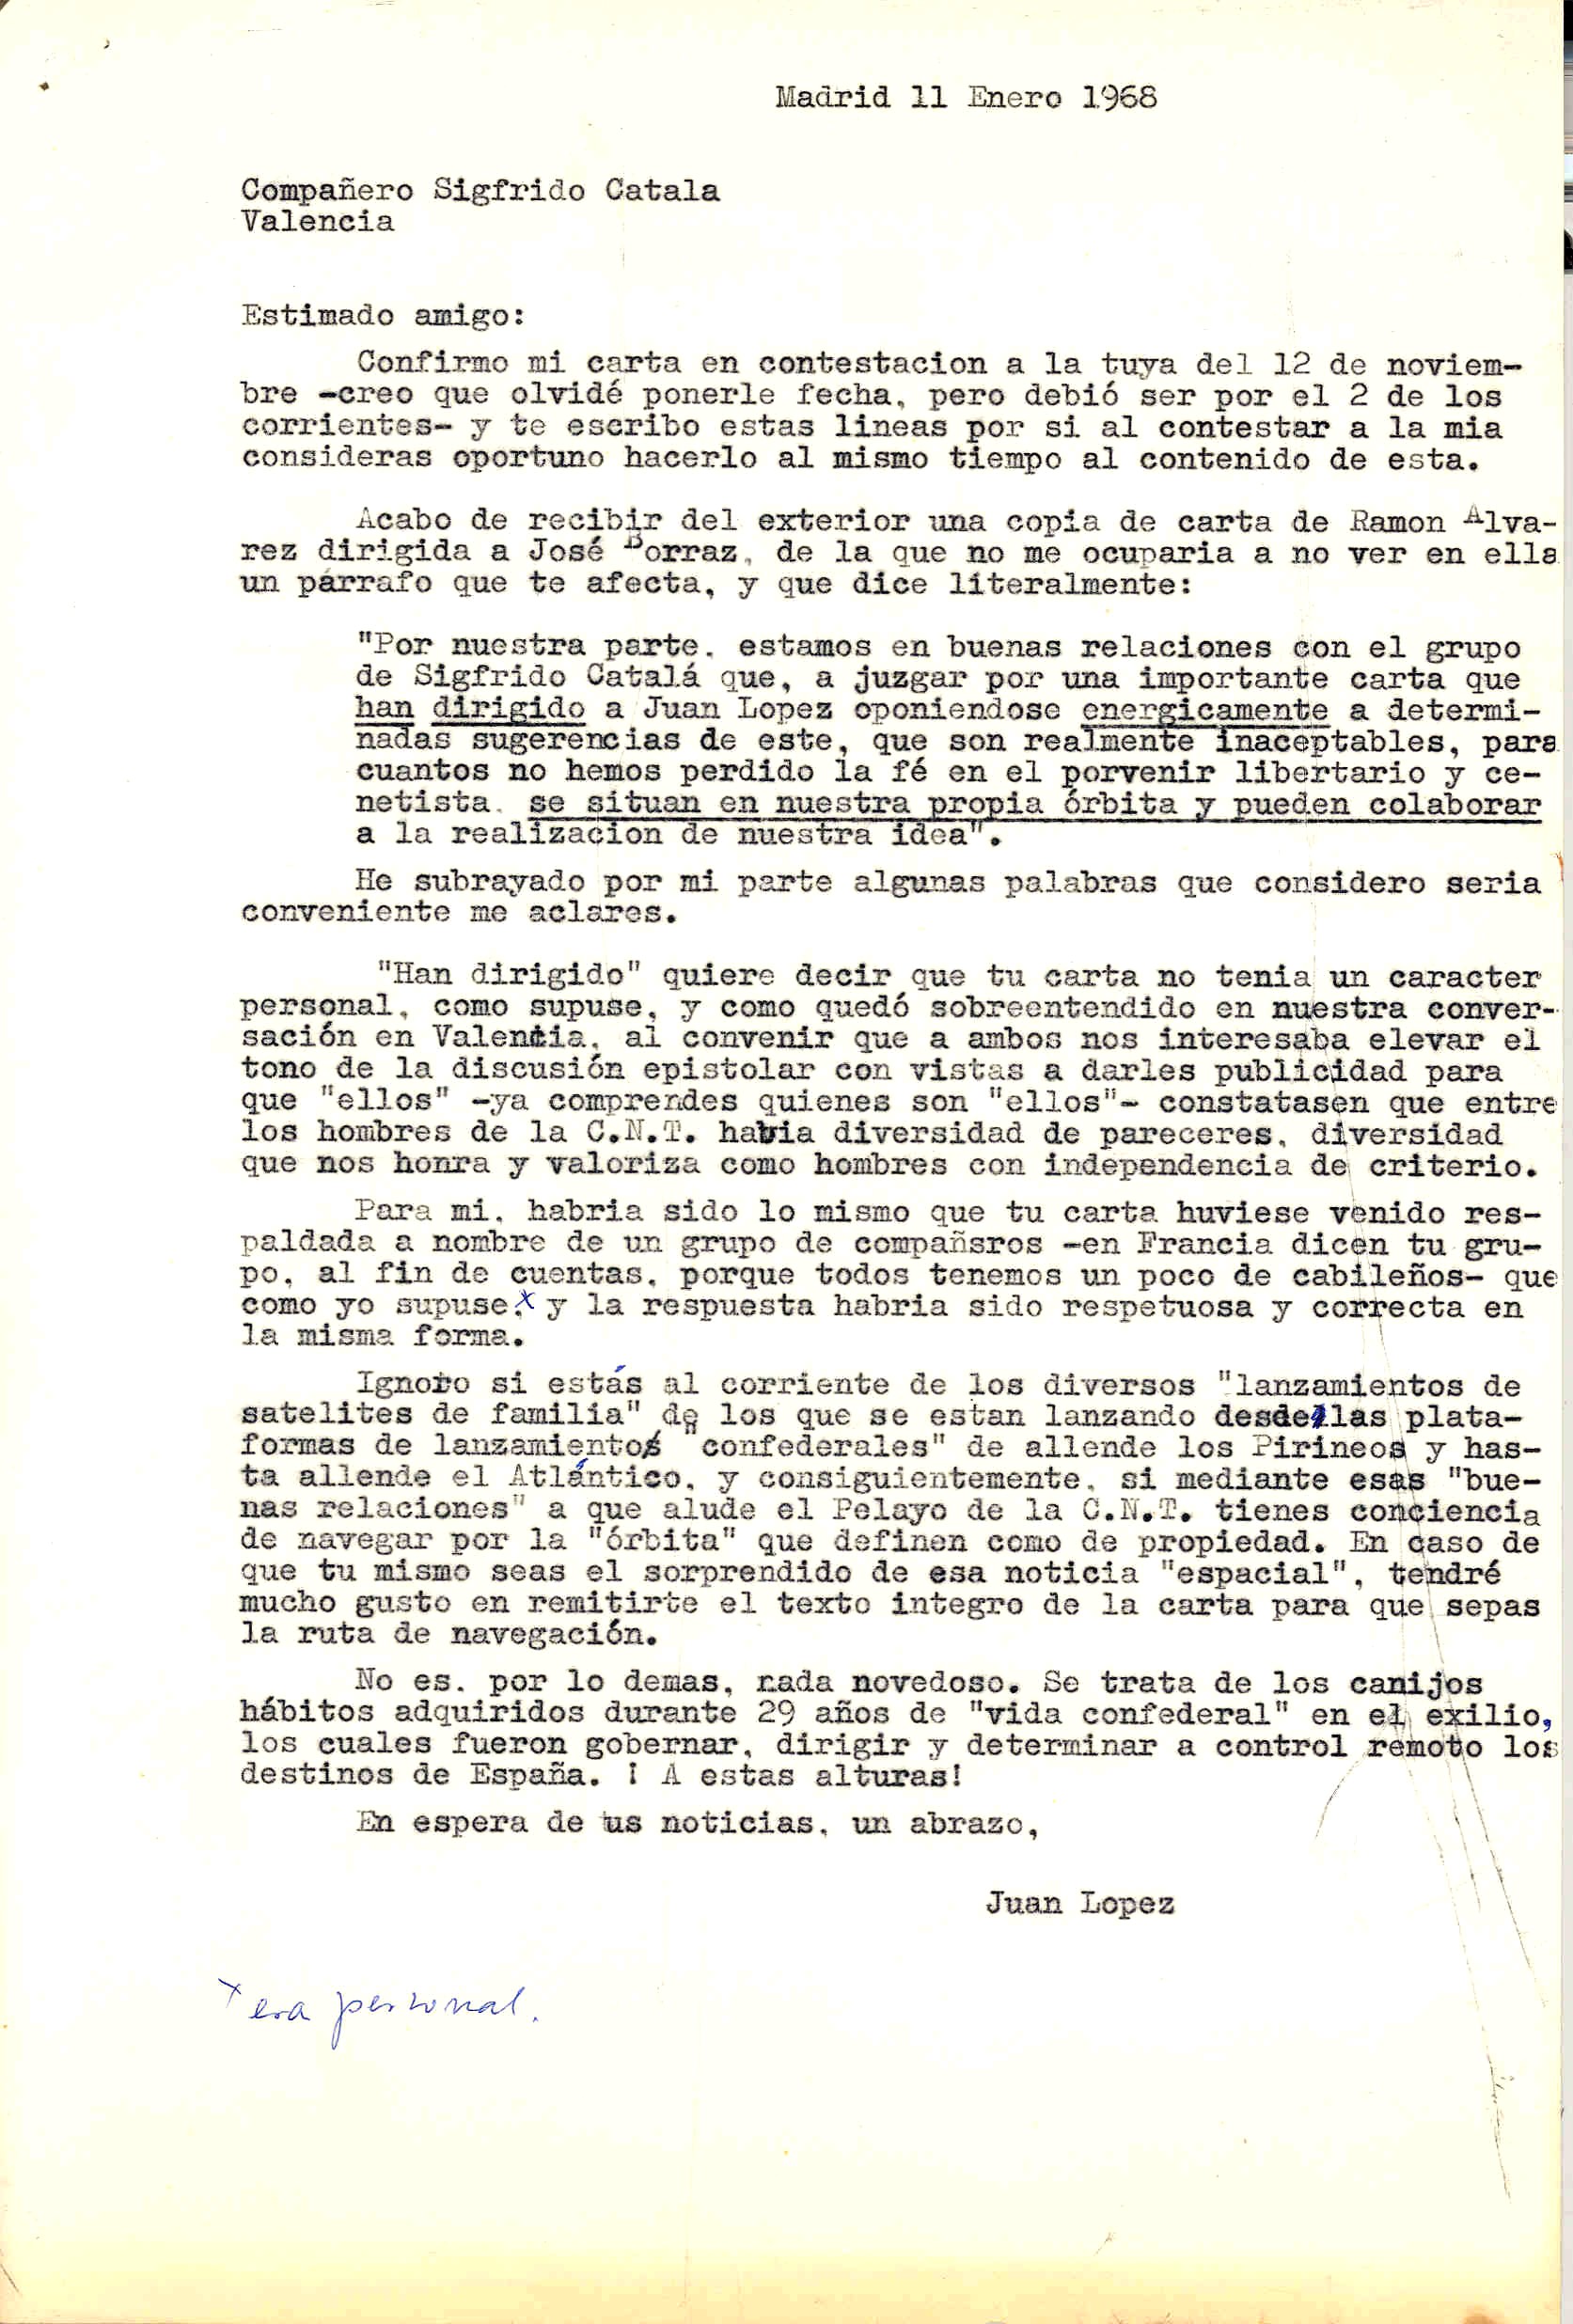 Carta a Sigfrido Catalá en la que pide que le aclare unos puntos de una carta ajena recibida que habla de la oposición de Catalá a las ideas deJuan López.